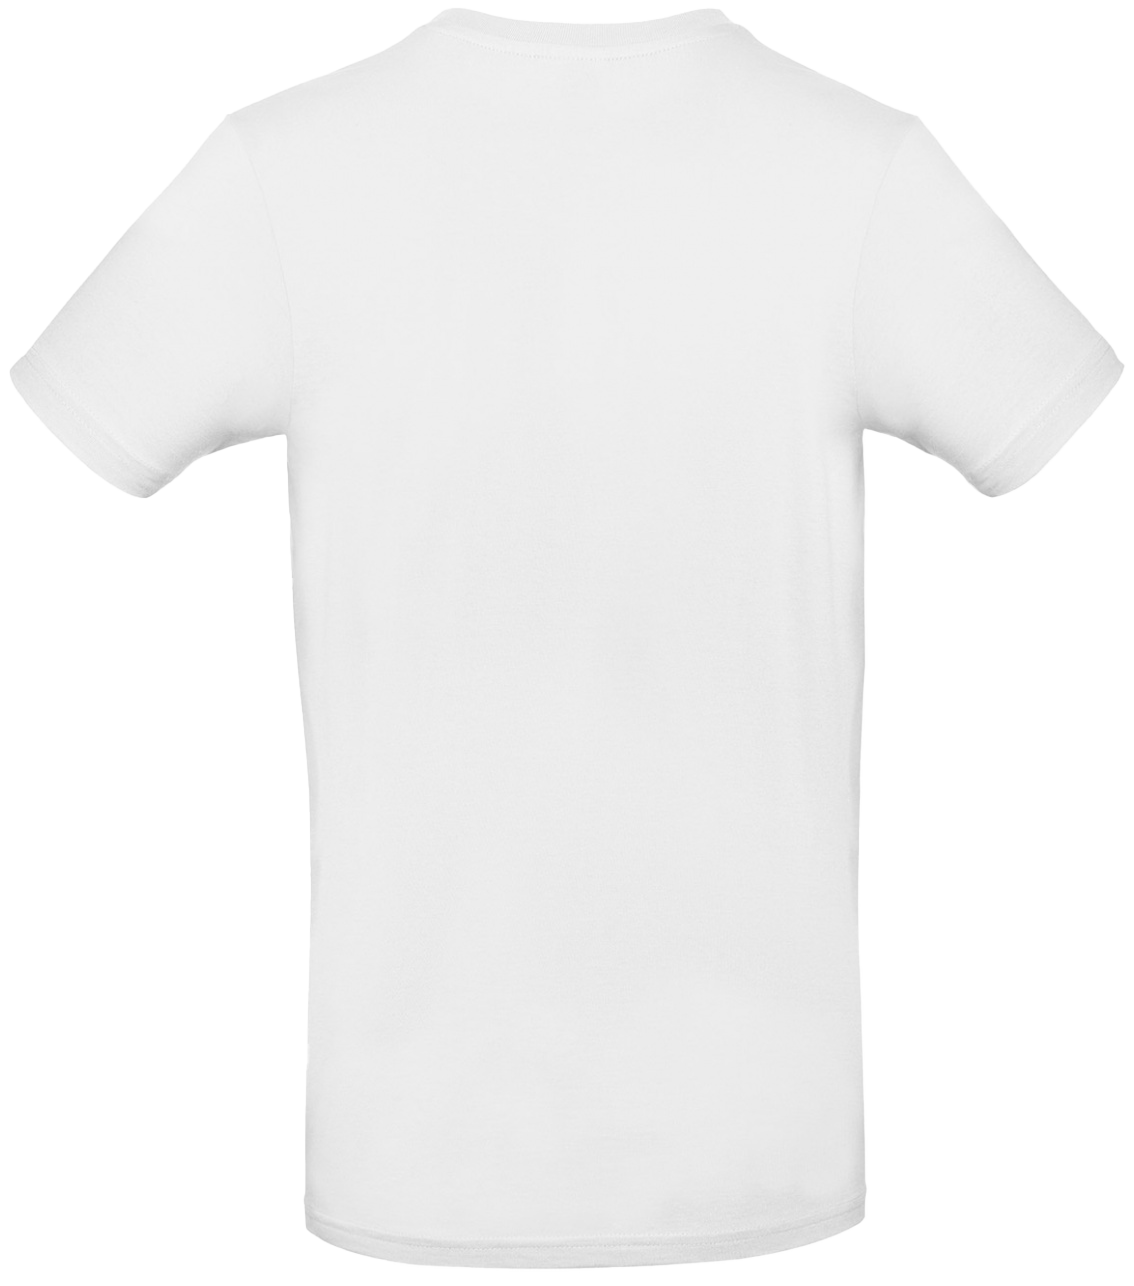 T-shirt E#190 Vit 50